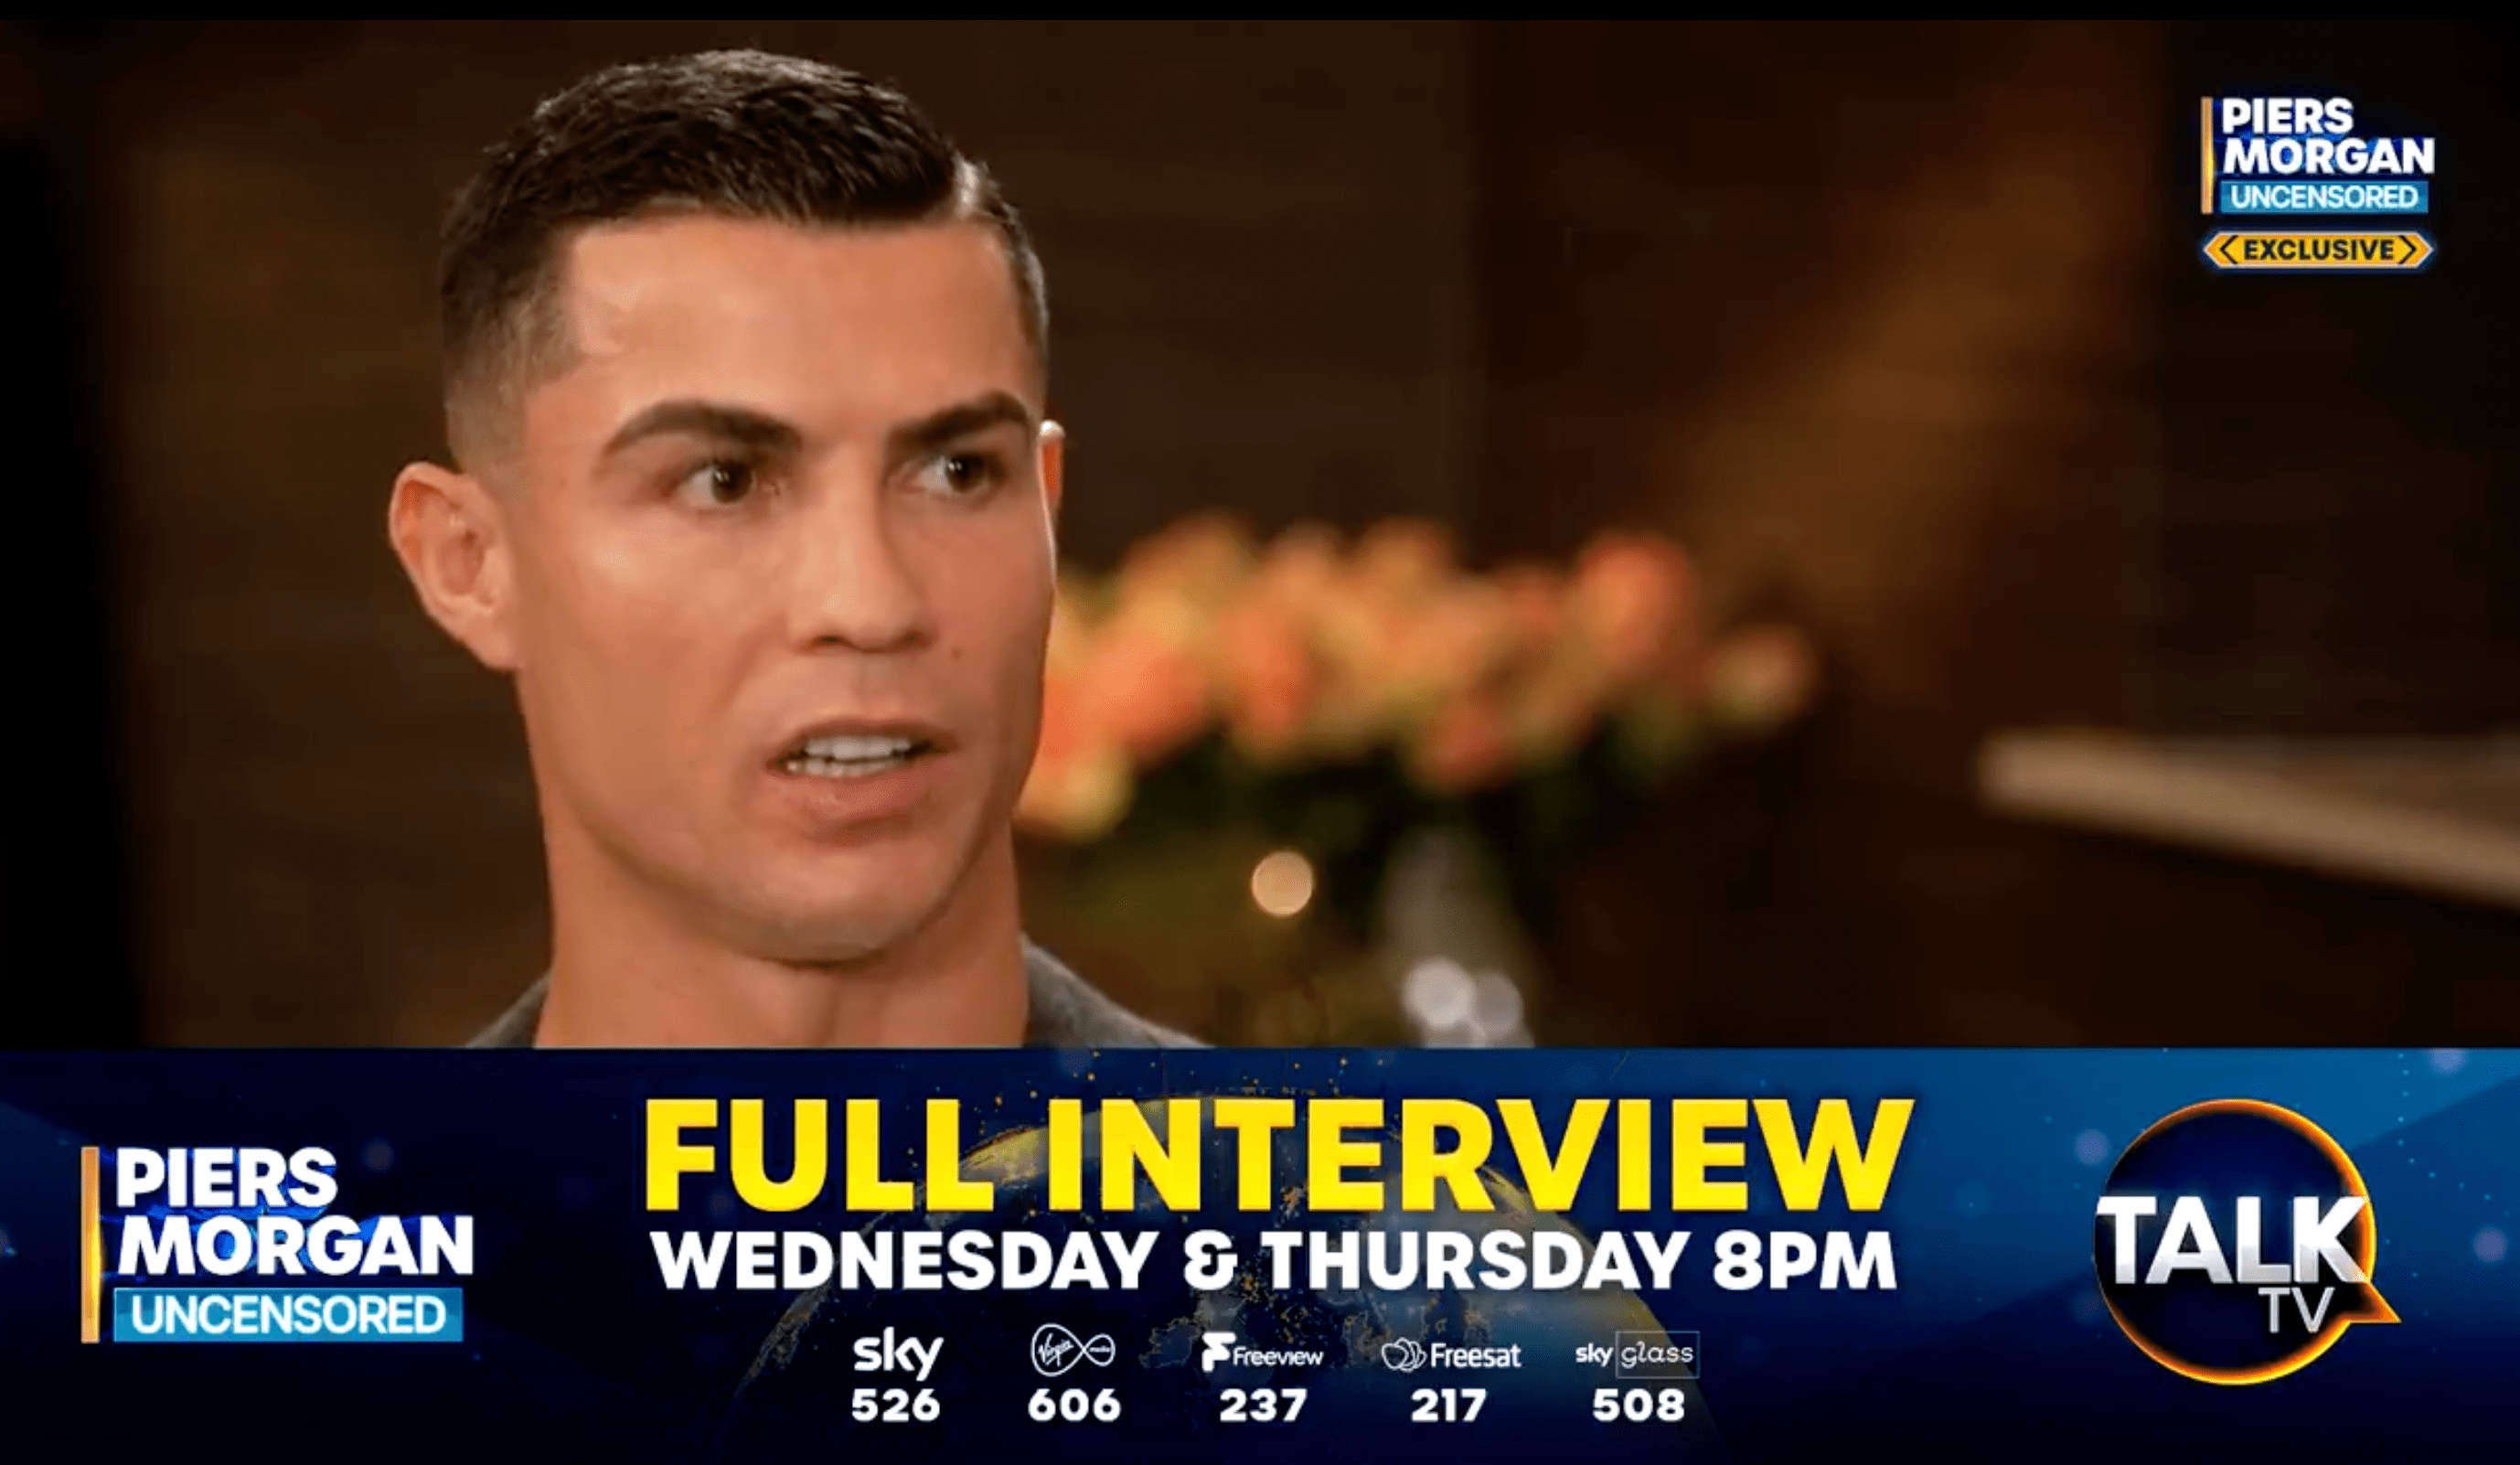 ÉLŐ: Hogyan nézd élőben Cristiano Ronaldo interjúját Piers Morgannel ma este